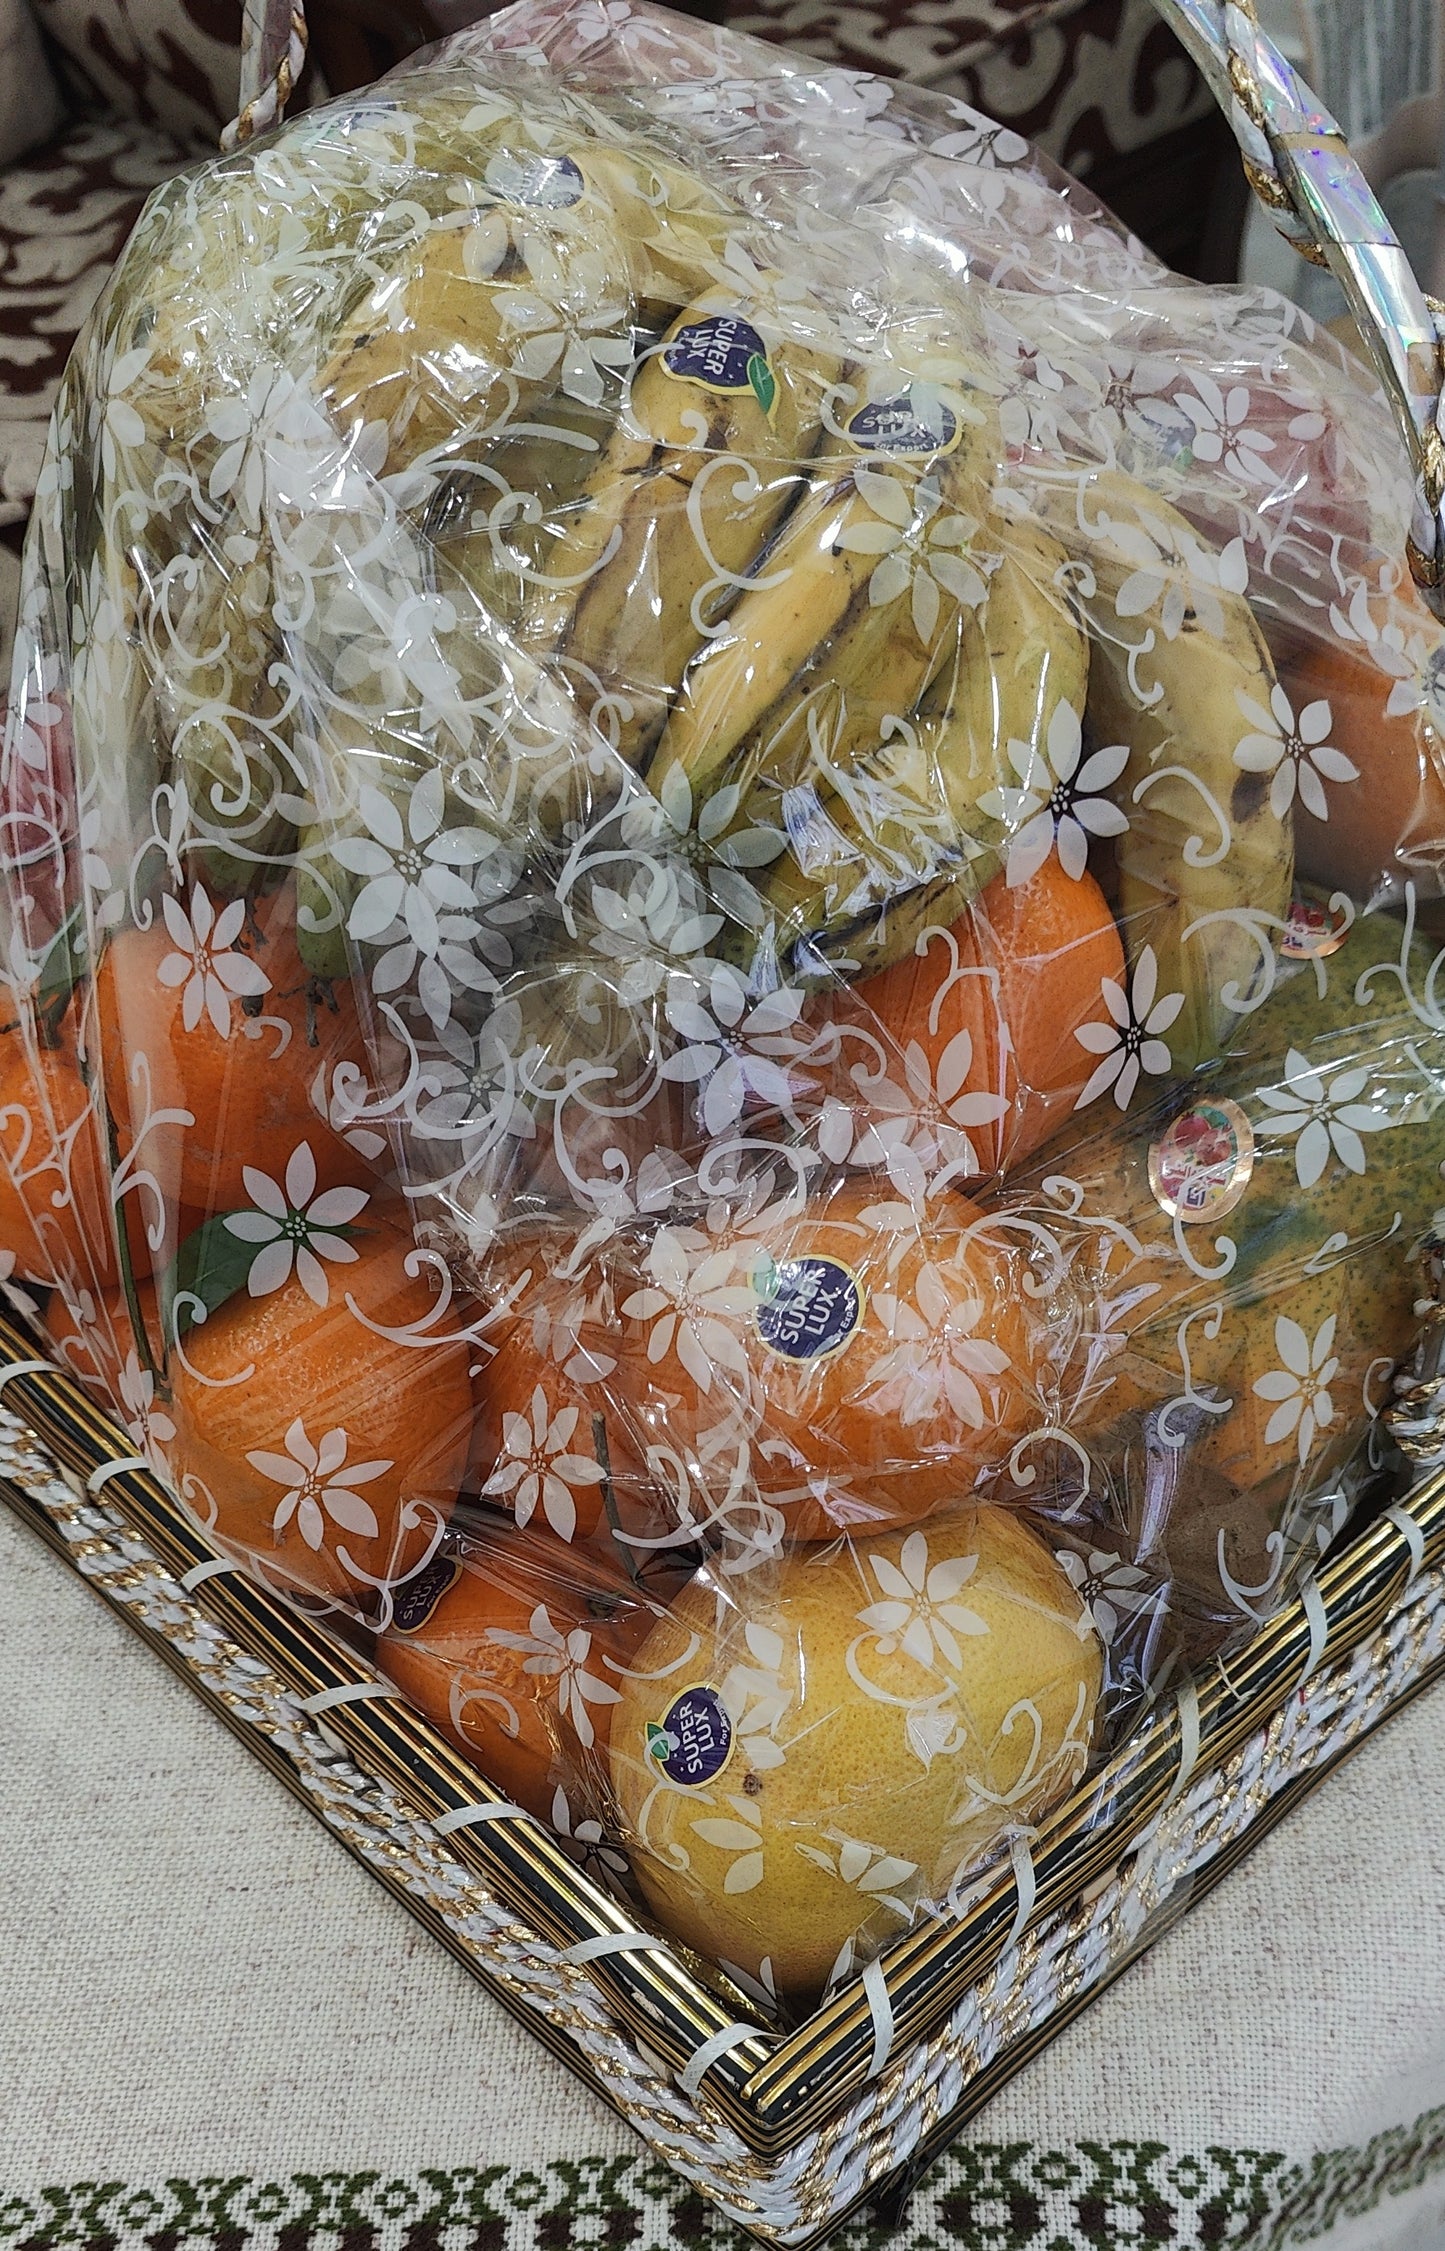 Fresh Fruit Basket - 16kg (Lahore Only)